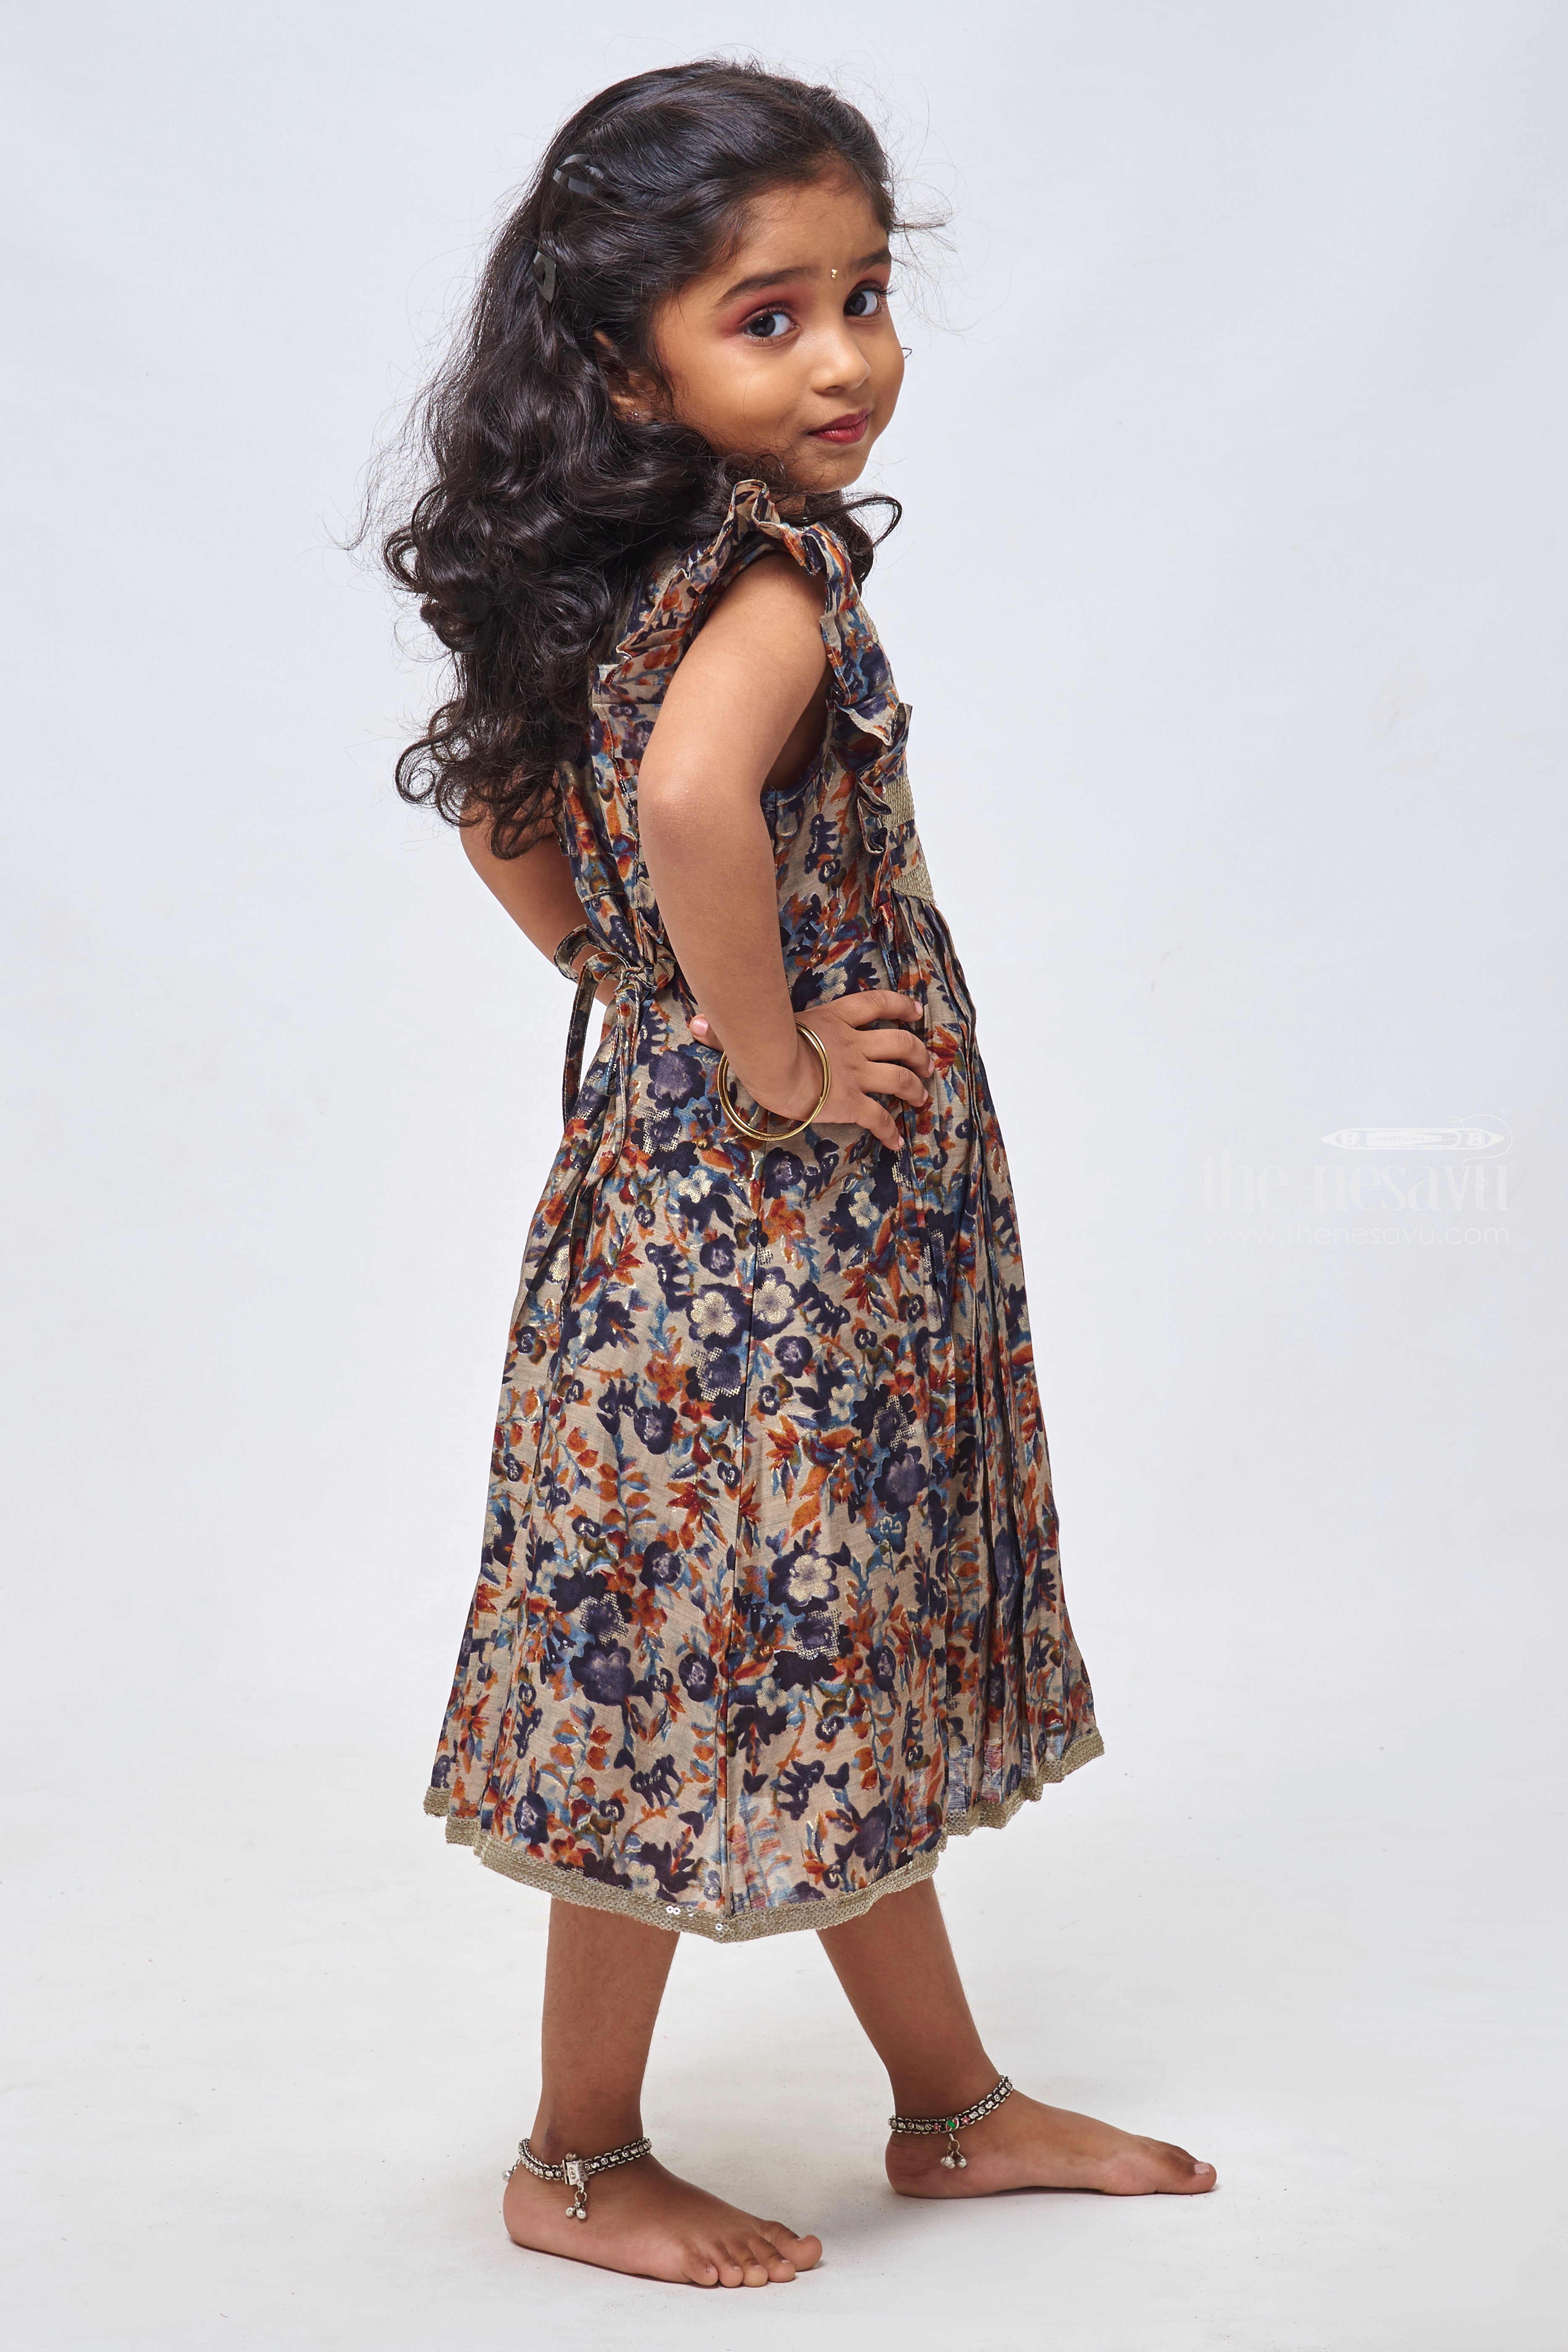 Pakistani Kids Girls Eid Formal Shalwar Kameez 3 Piece Suit - Etsy | Dresses  kids girl, Baby girl dress design, Kids designer dresses